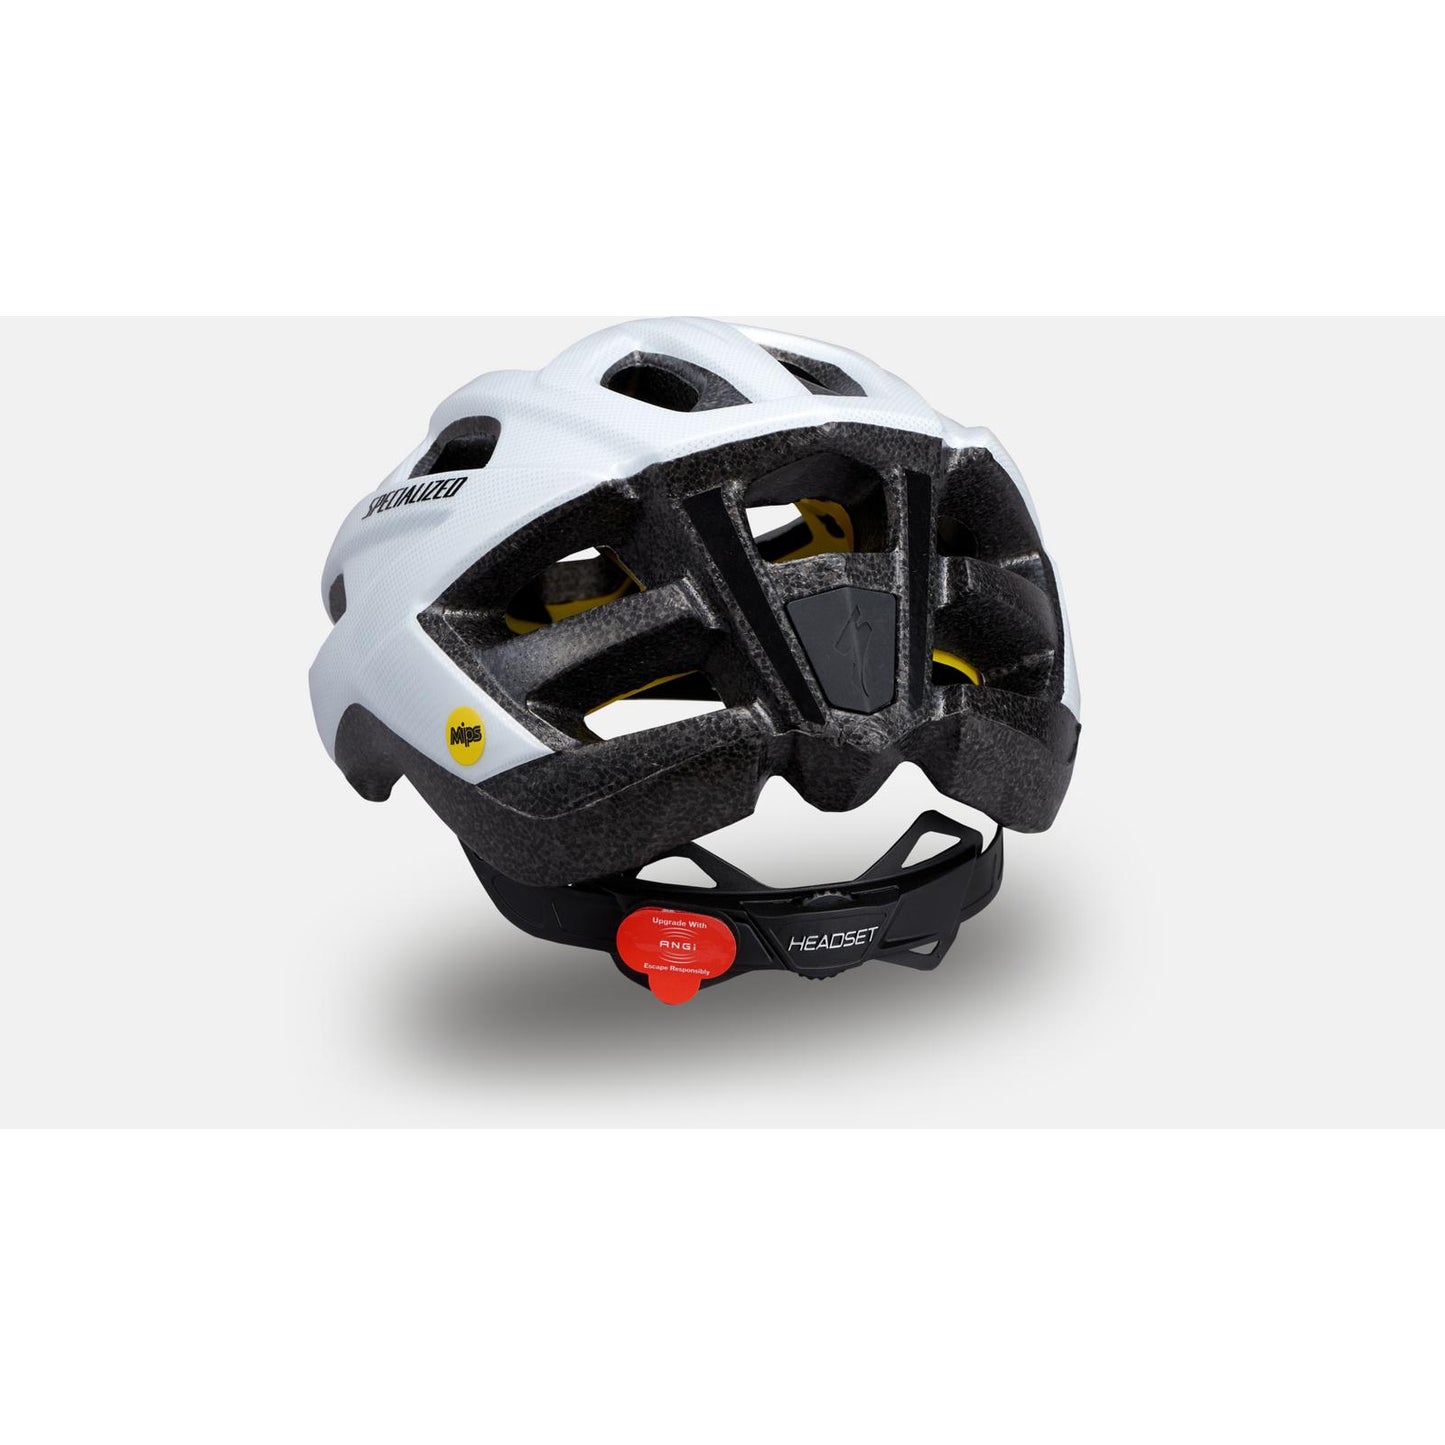 Specialized Chamonix 2 Bike Helmet - Helmets - Bicycle Warehouse